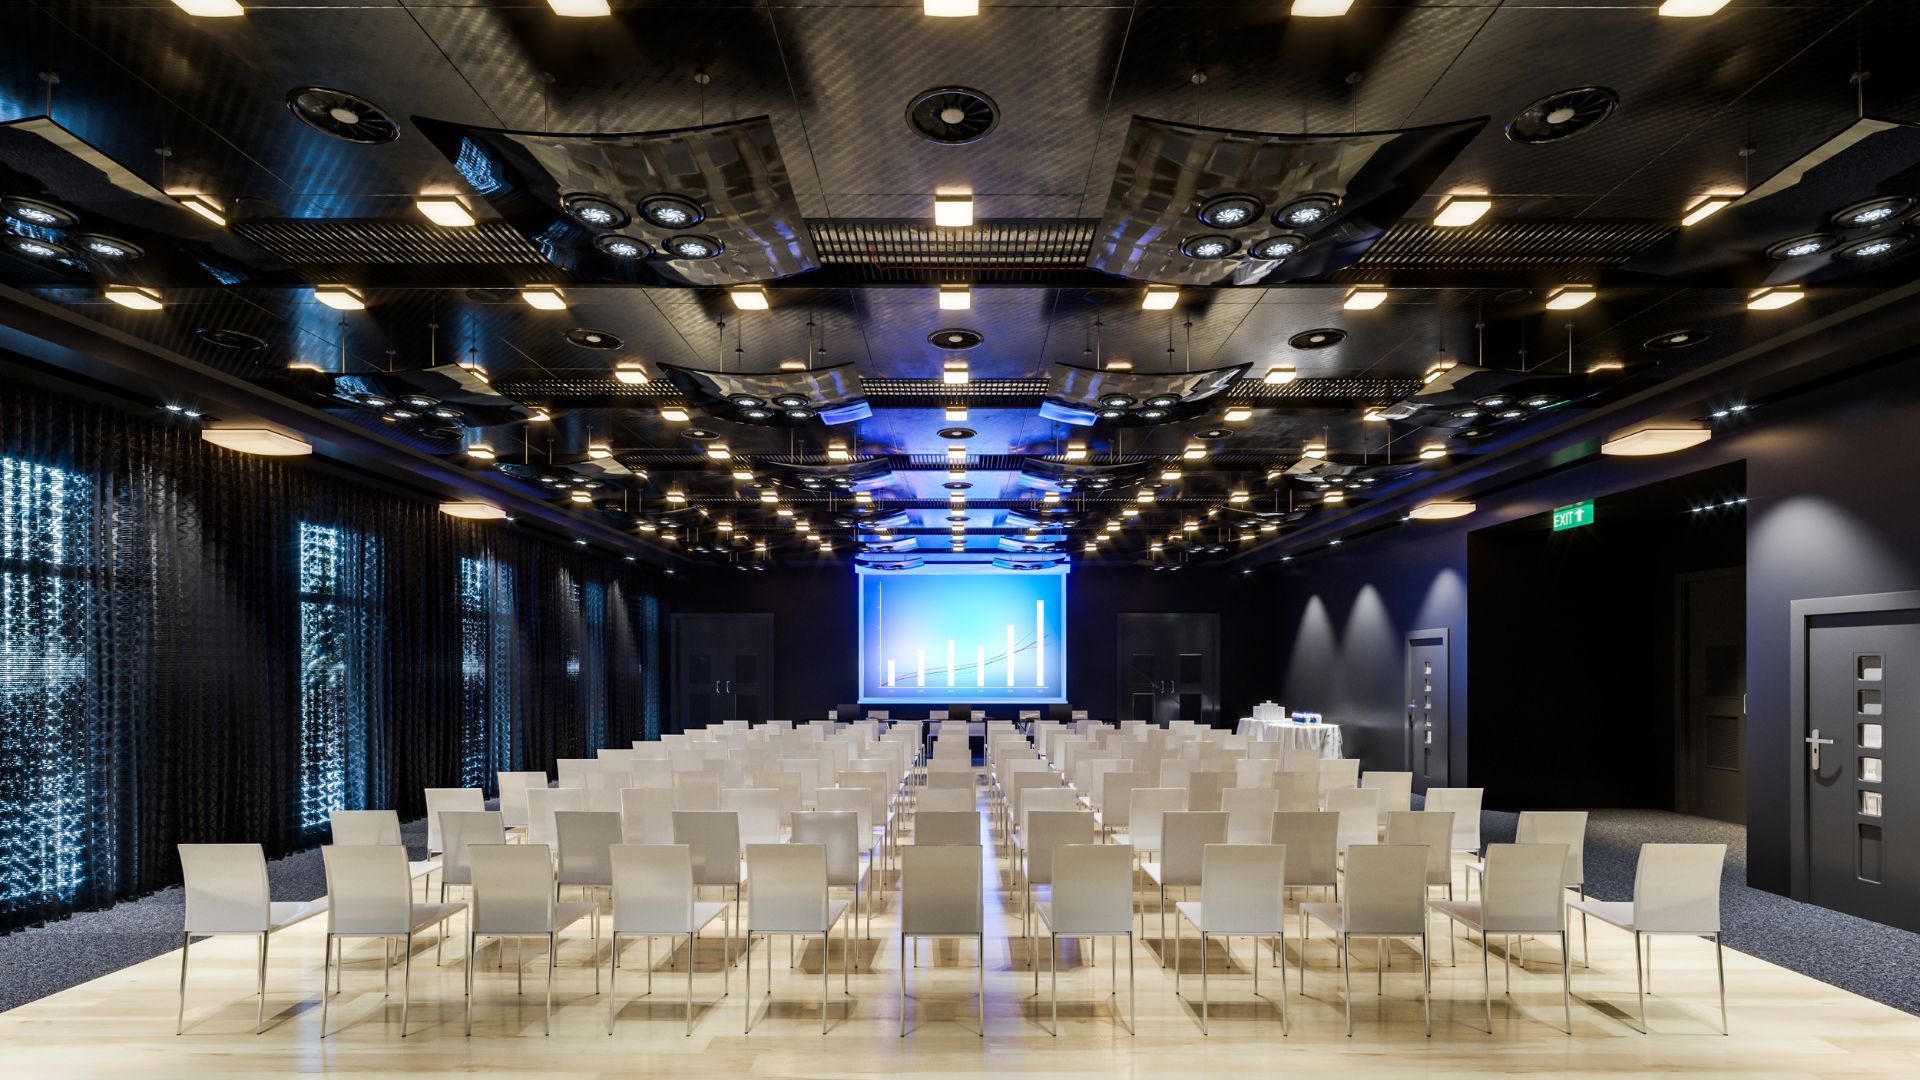 Typowy ośrodek konferencyjny z oświetloną sceną oraz miejscami siedzącymi na sali dla gości.